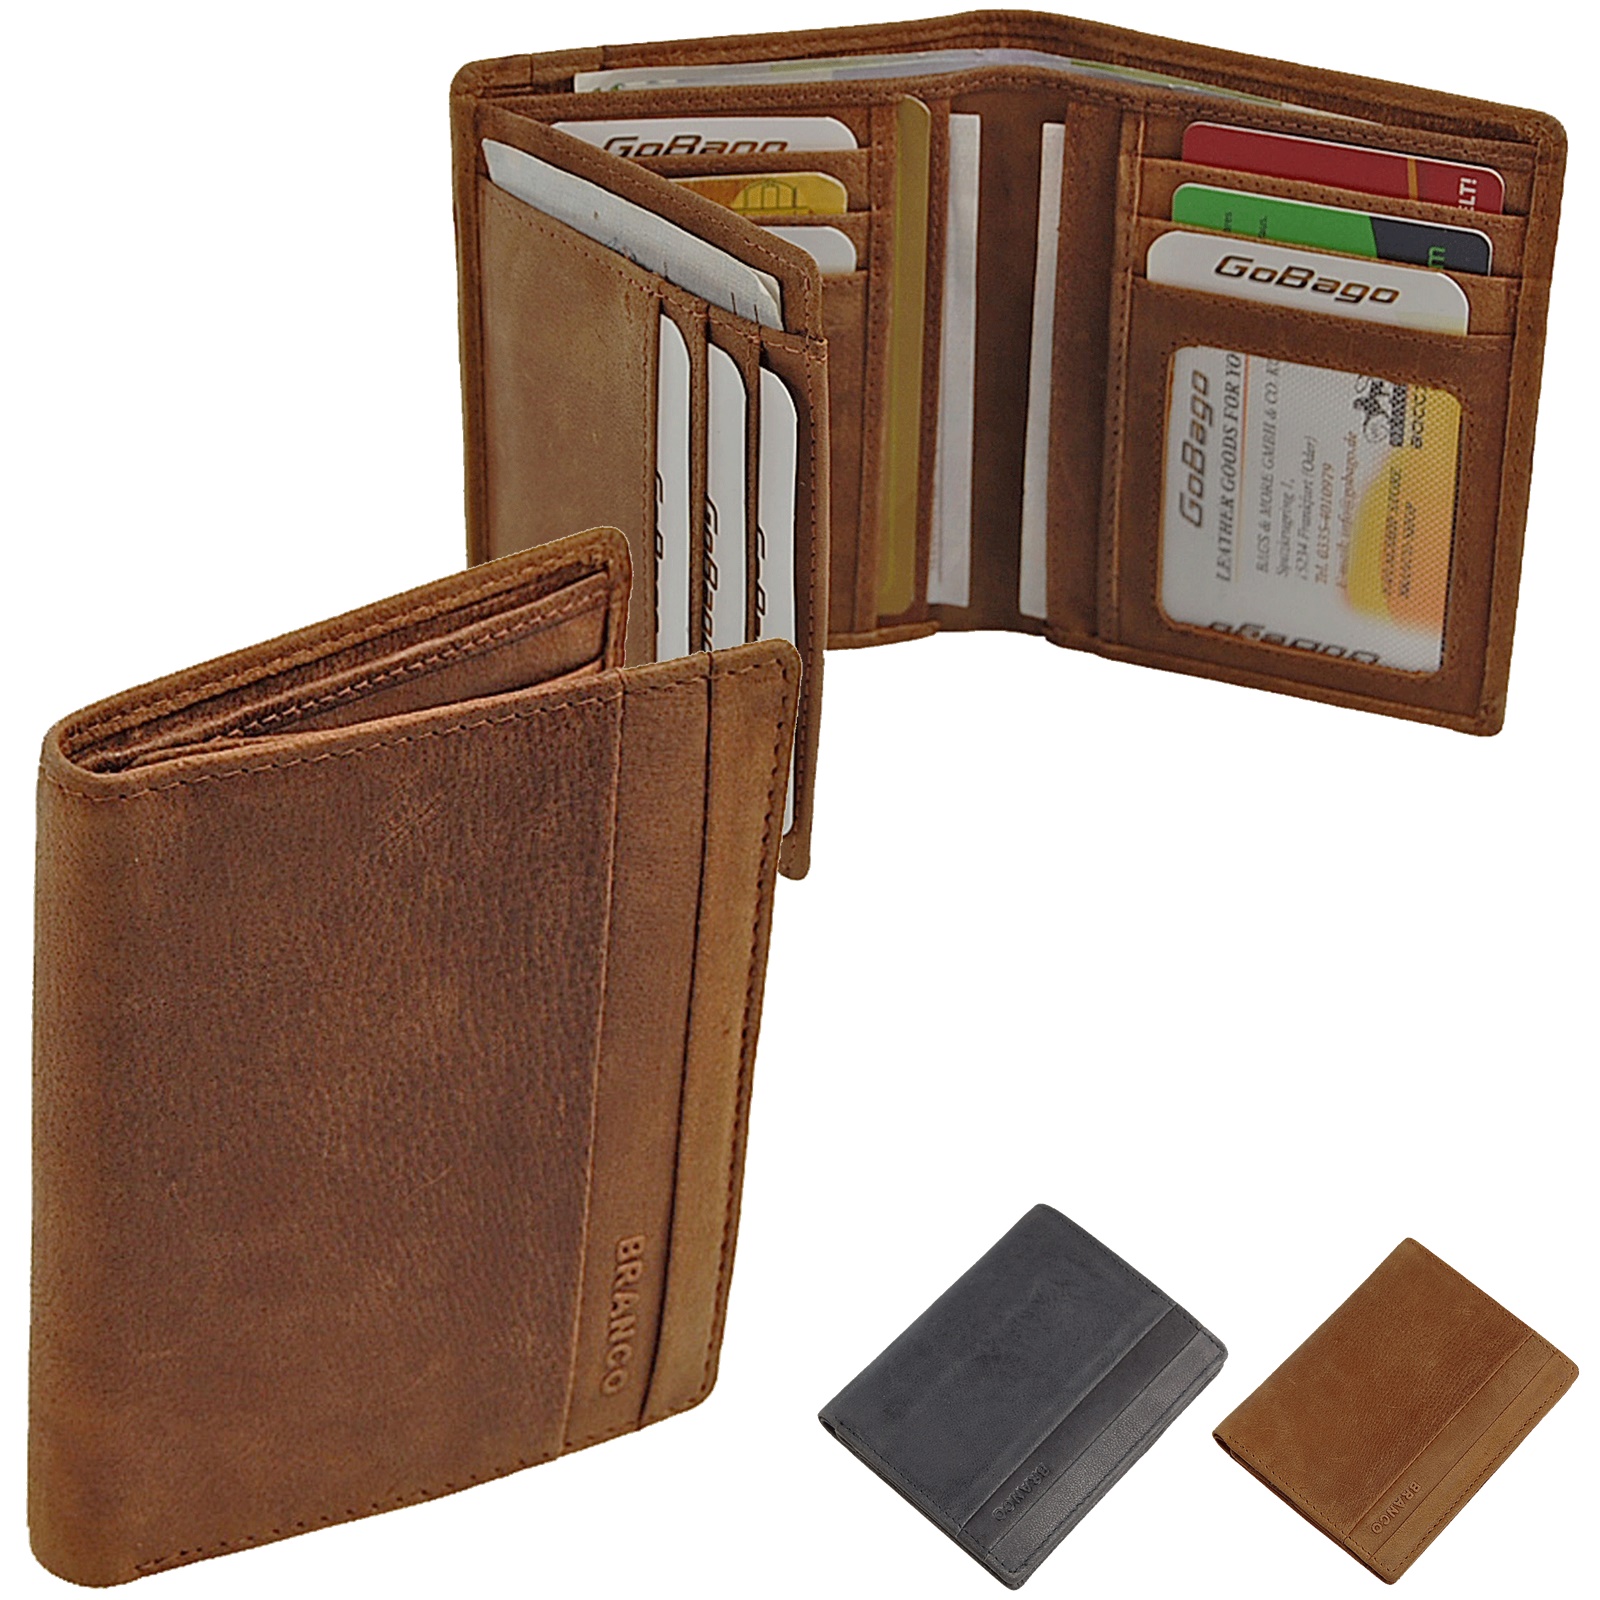 Farben präsentiert von ZMOKA® in versch kleine edle Dokumentenmappe Ausweishülle Führerscheinhülle Kartenmappe Kreditkartenhülle Branco Leder 